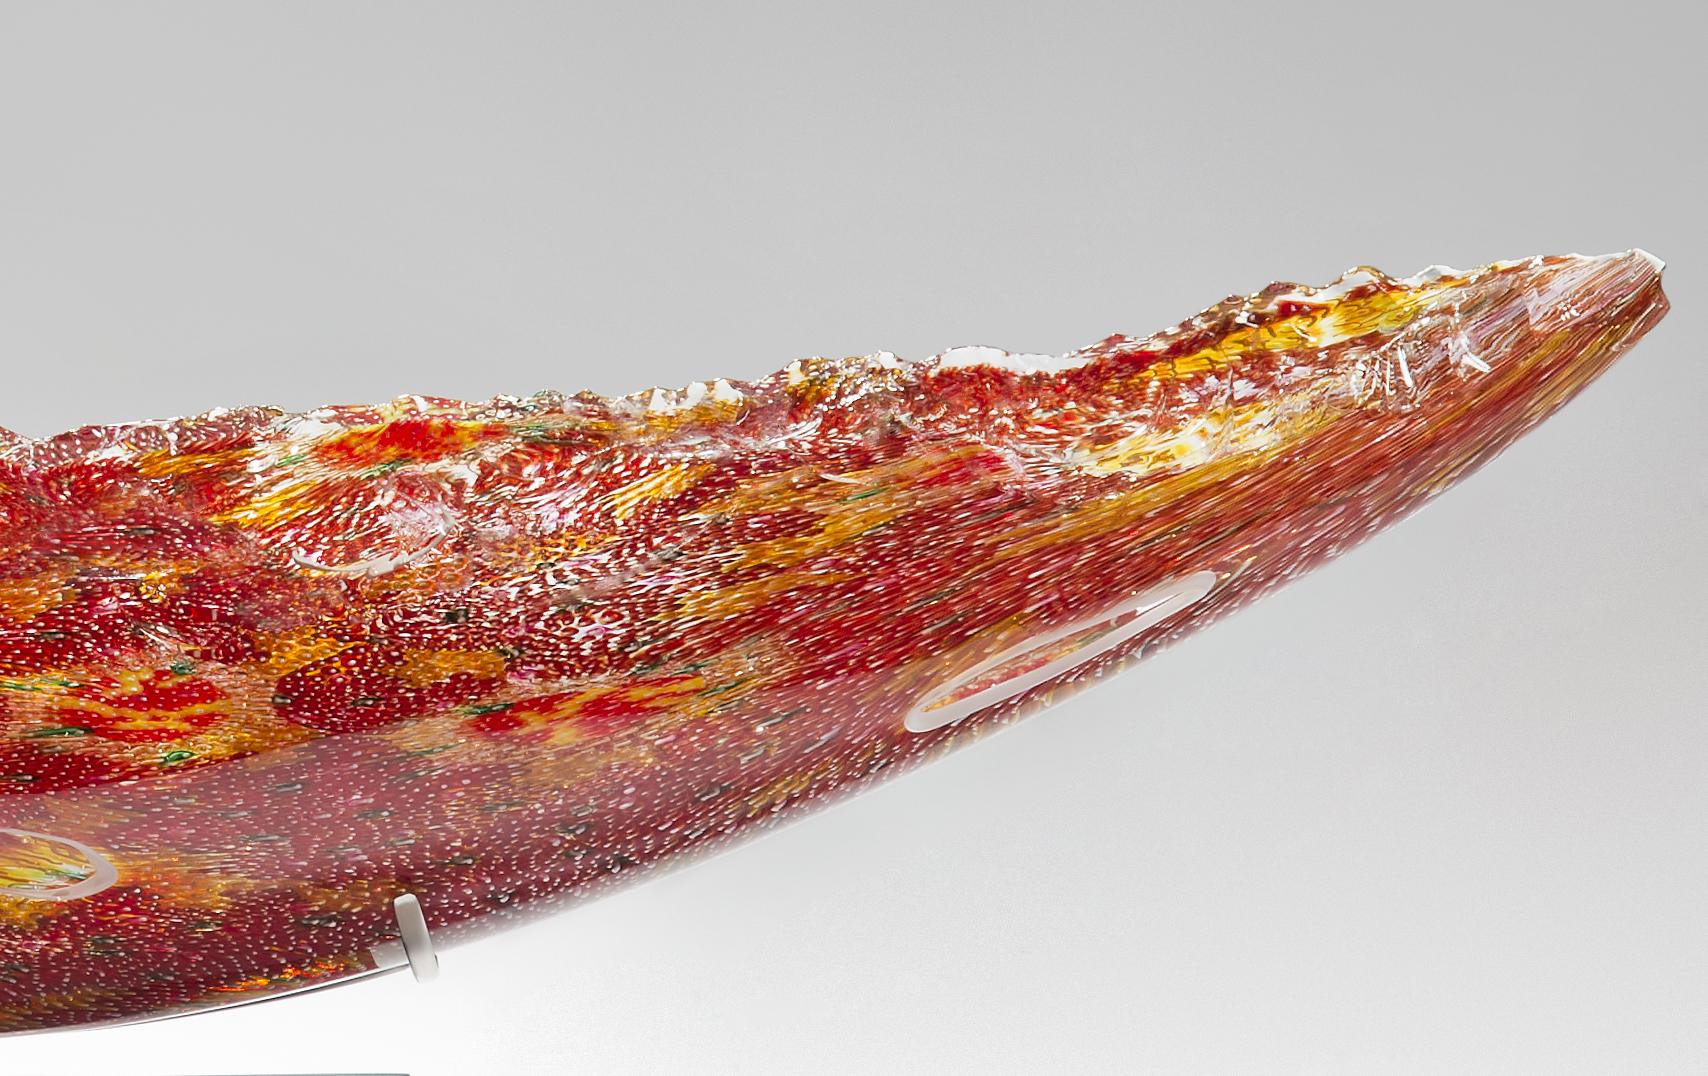 Hand-Crafted Coral Quillon, a Unique Glass Sculpture by James Devereux & David Patchen